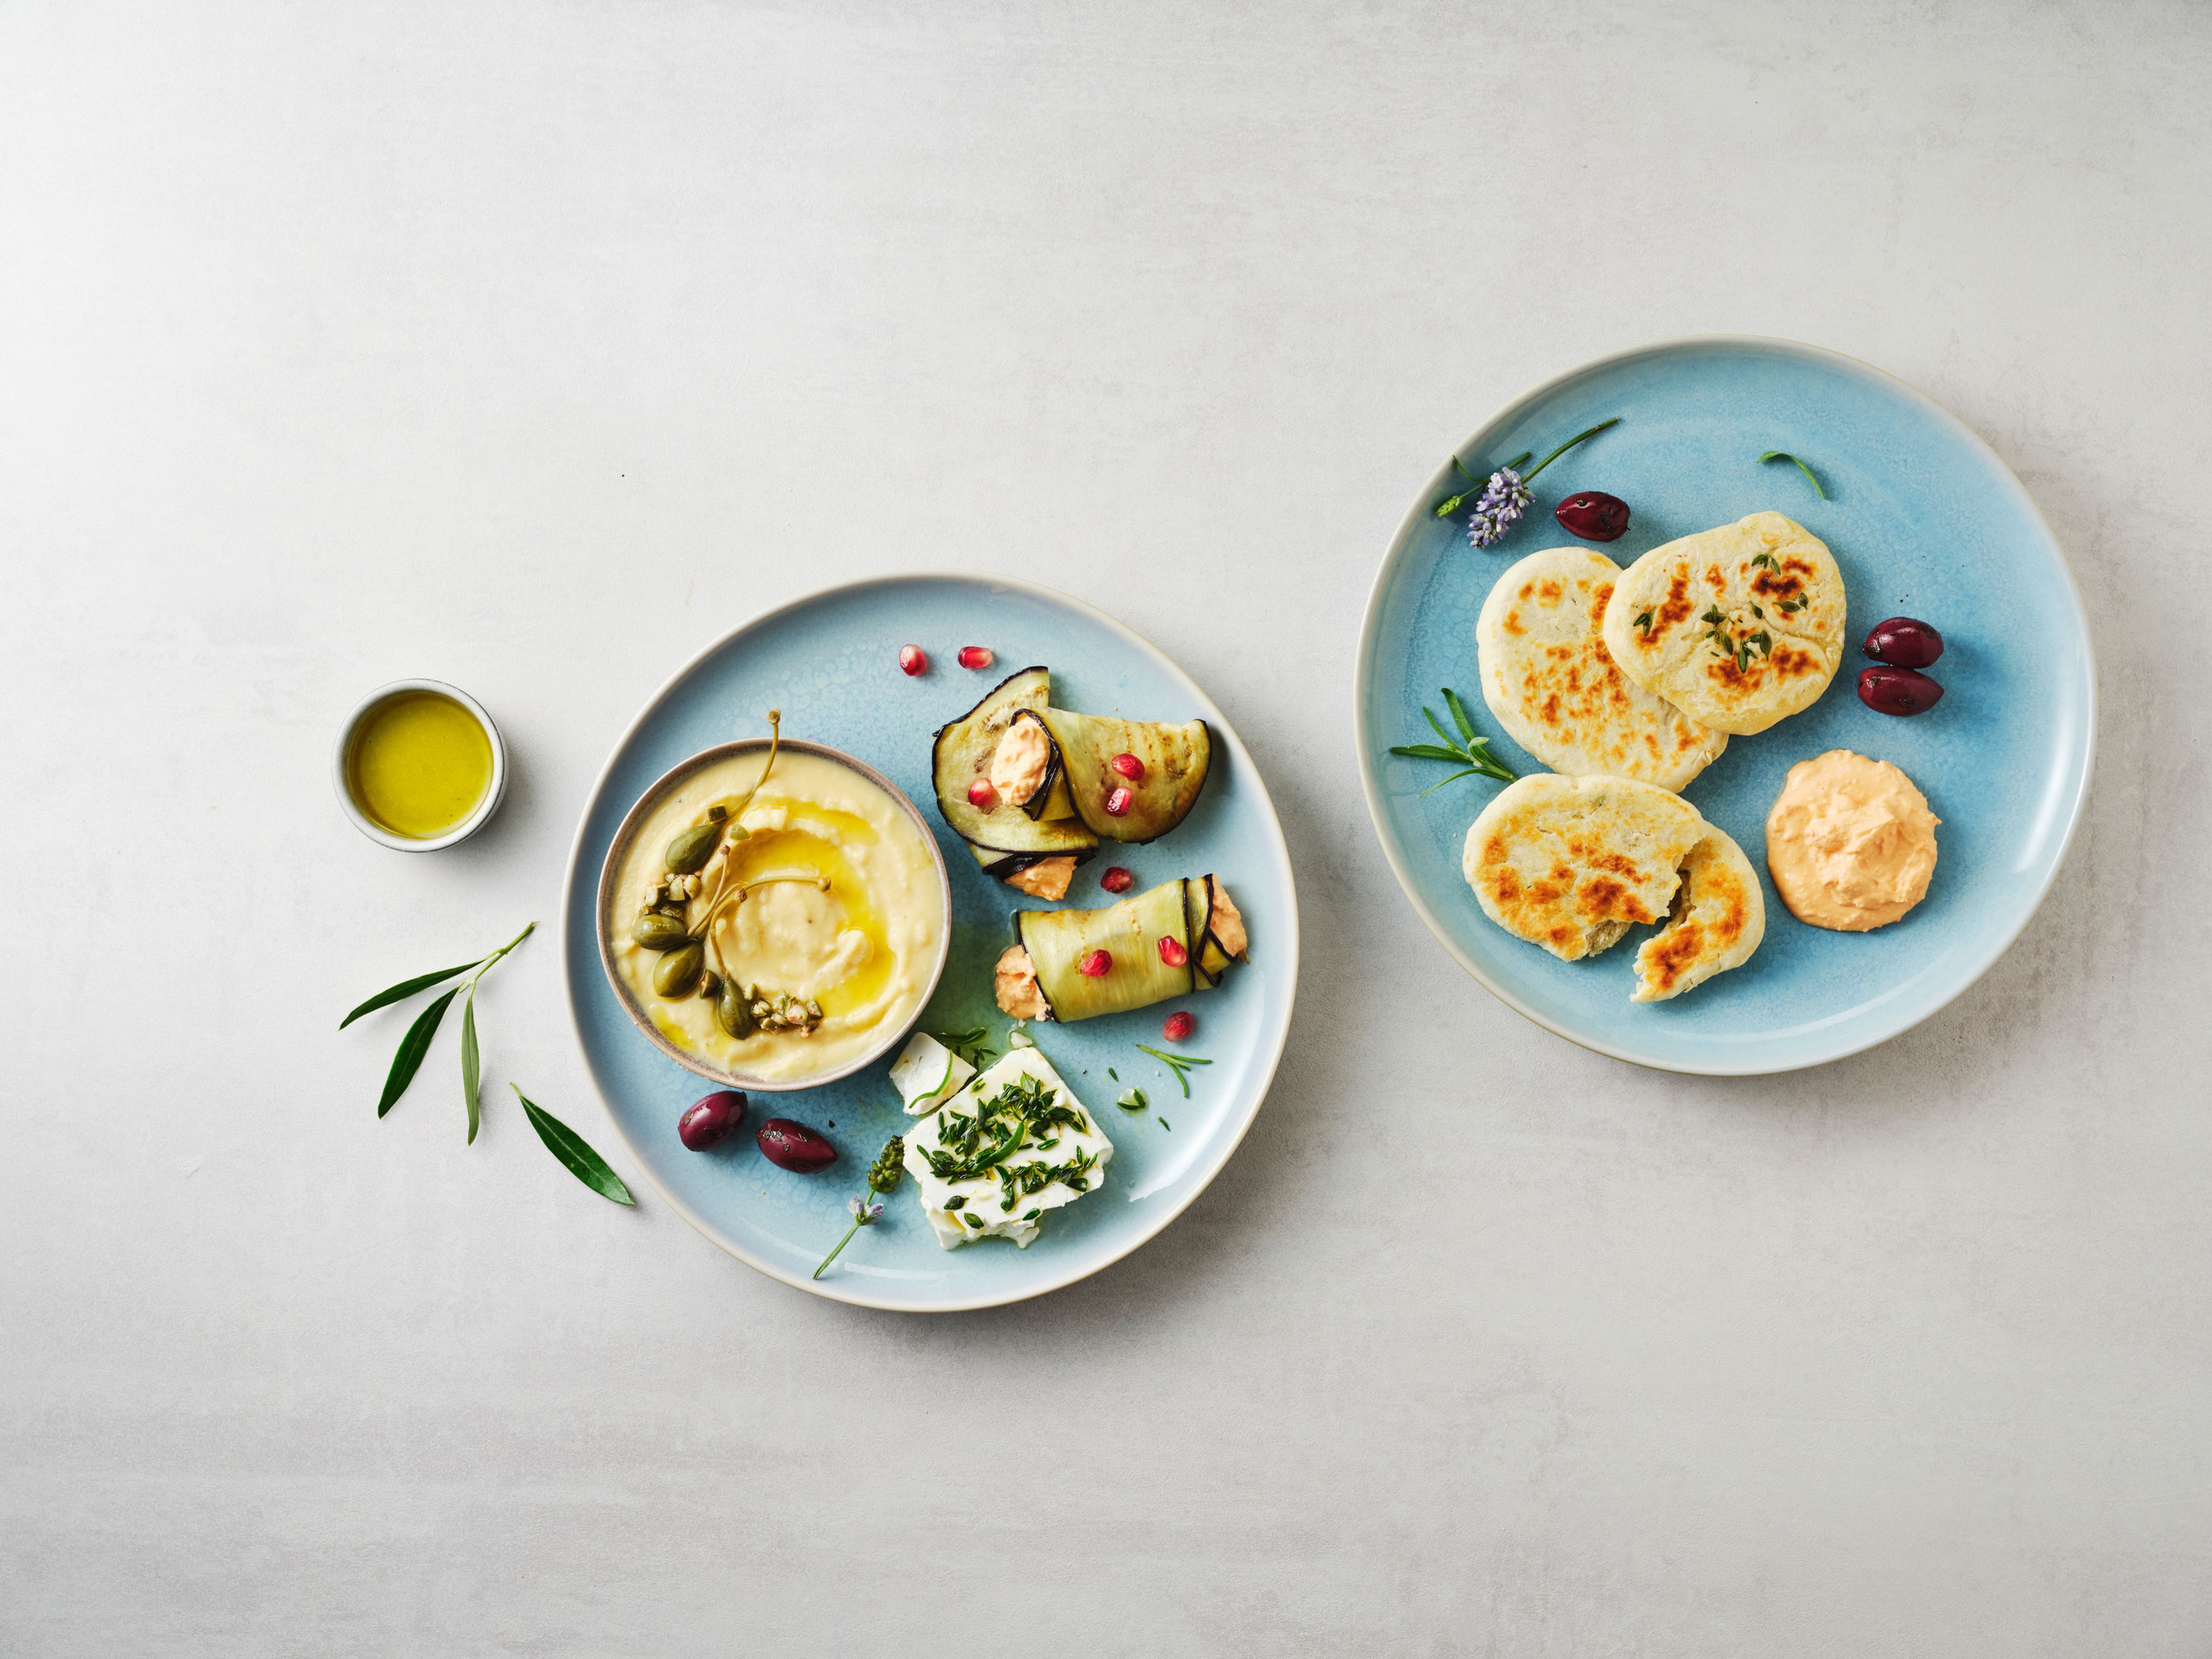 Die verschiedenen Vorspeisen auf einem Teller anrichten. Dazu verschiedene Oliven und griechisches Pitabrot reichen.